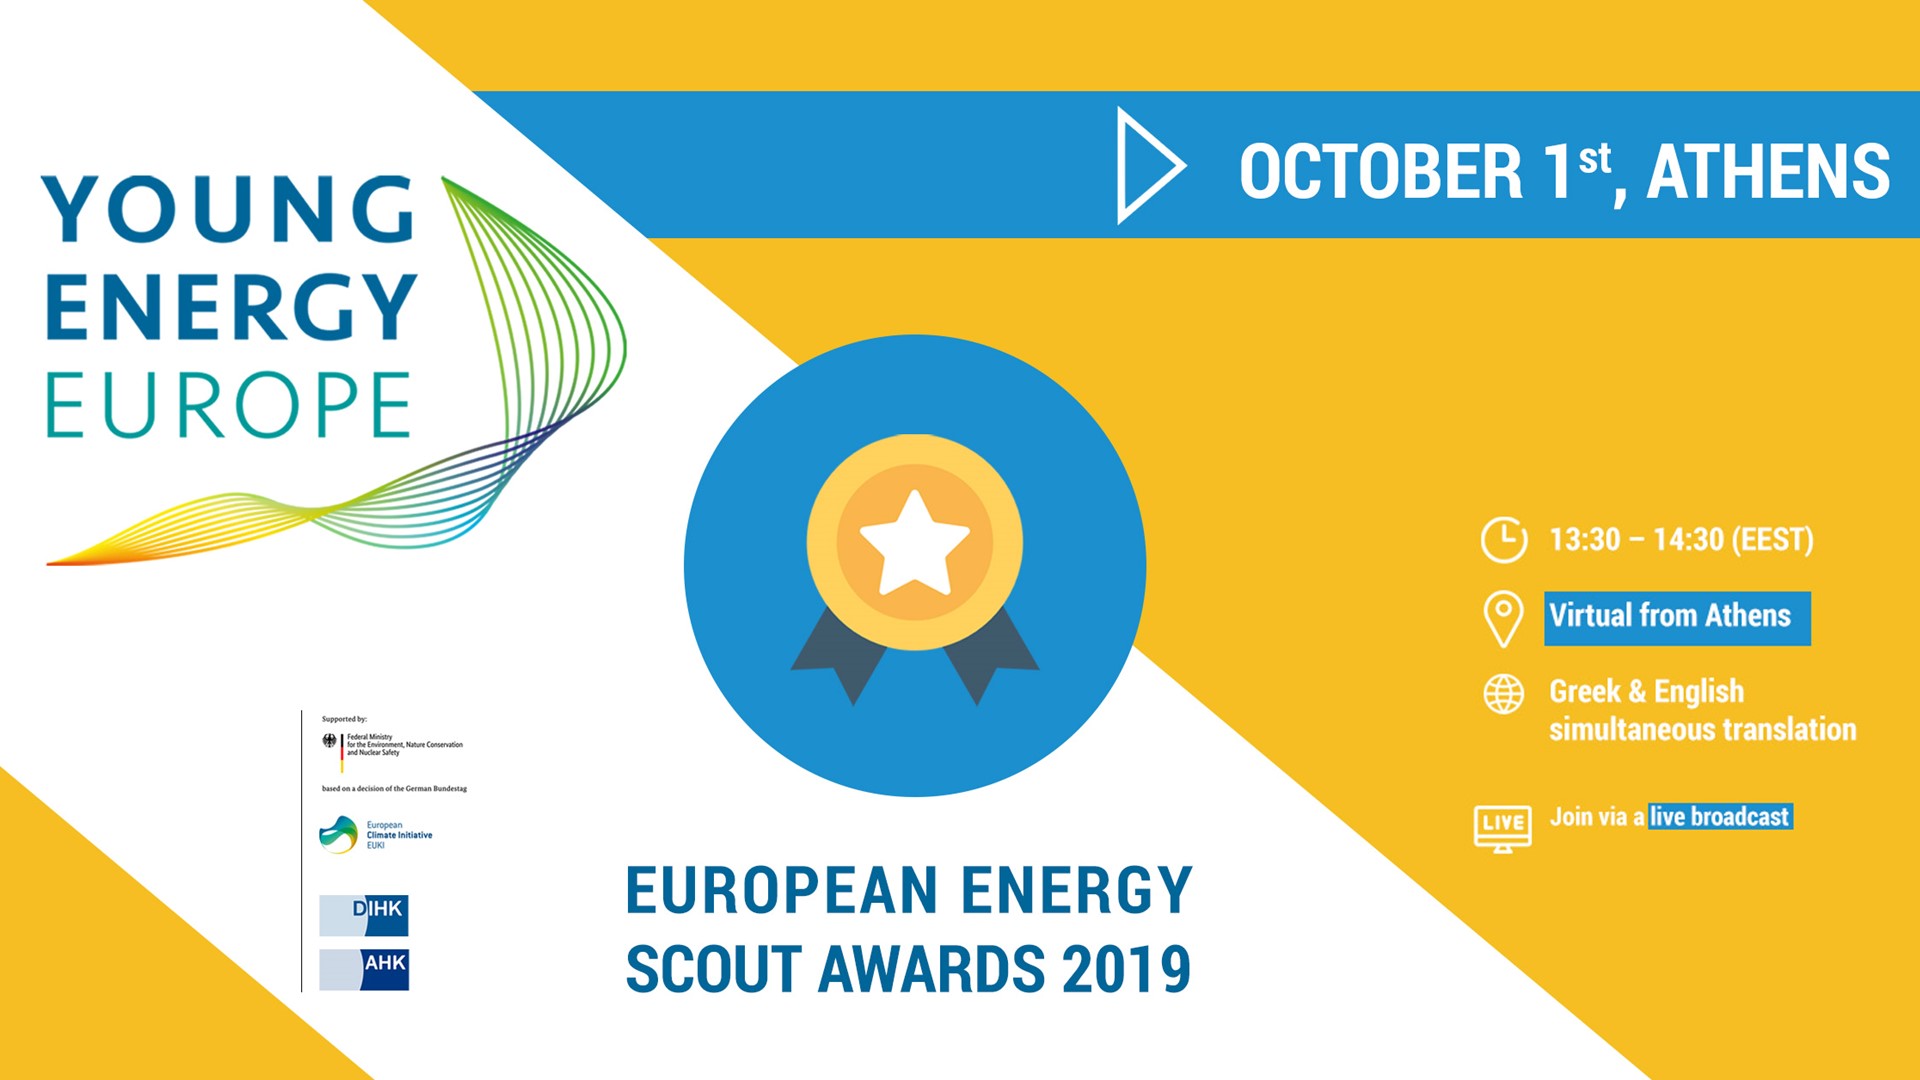 Αύριο η τελετή απονομής των ευρωπαϊκών βραβείων “Energy Scouts” 2019 στο πλαίσιο του έργου Young Energy Europe